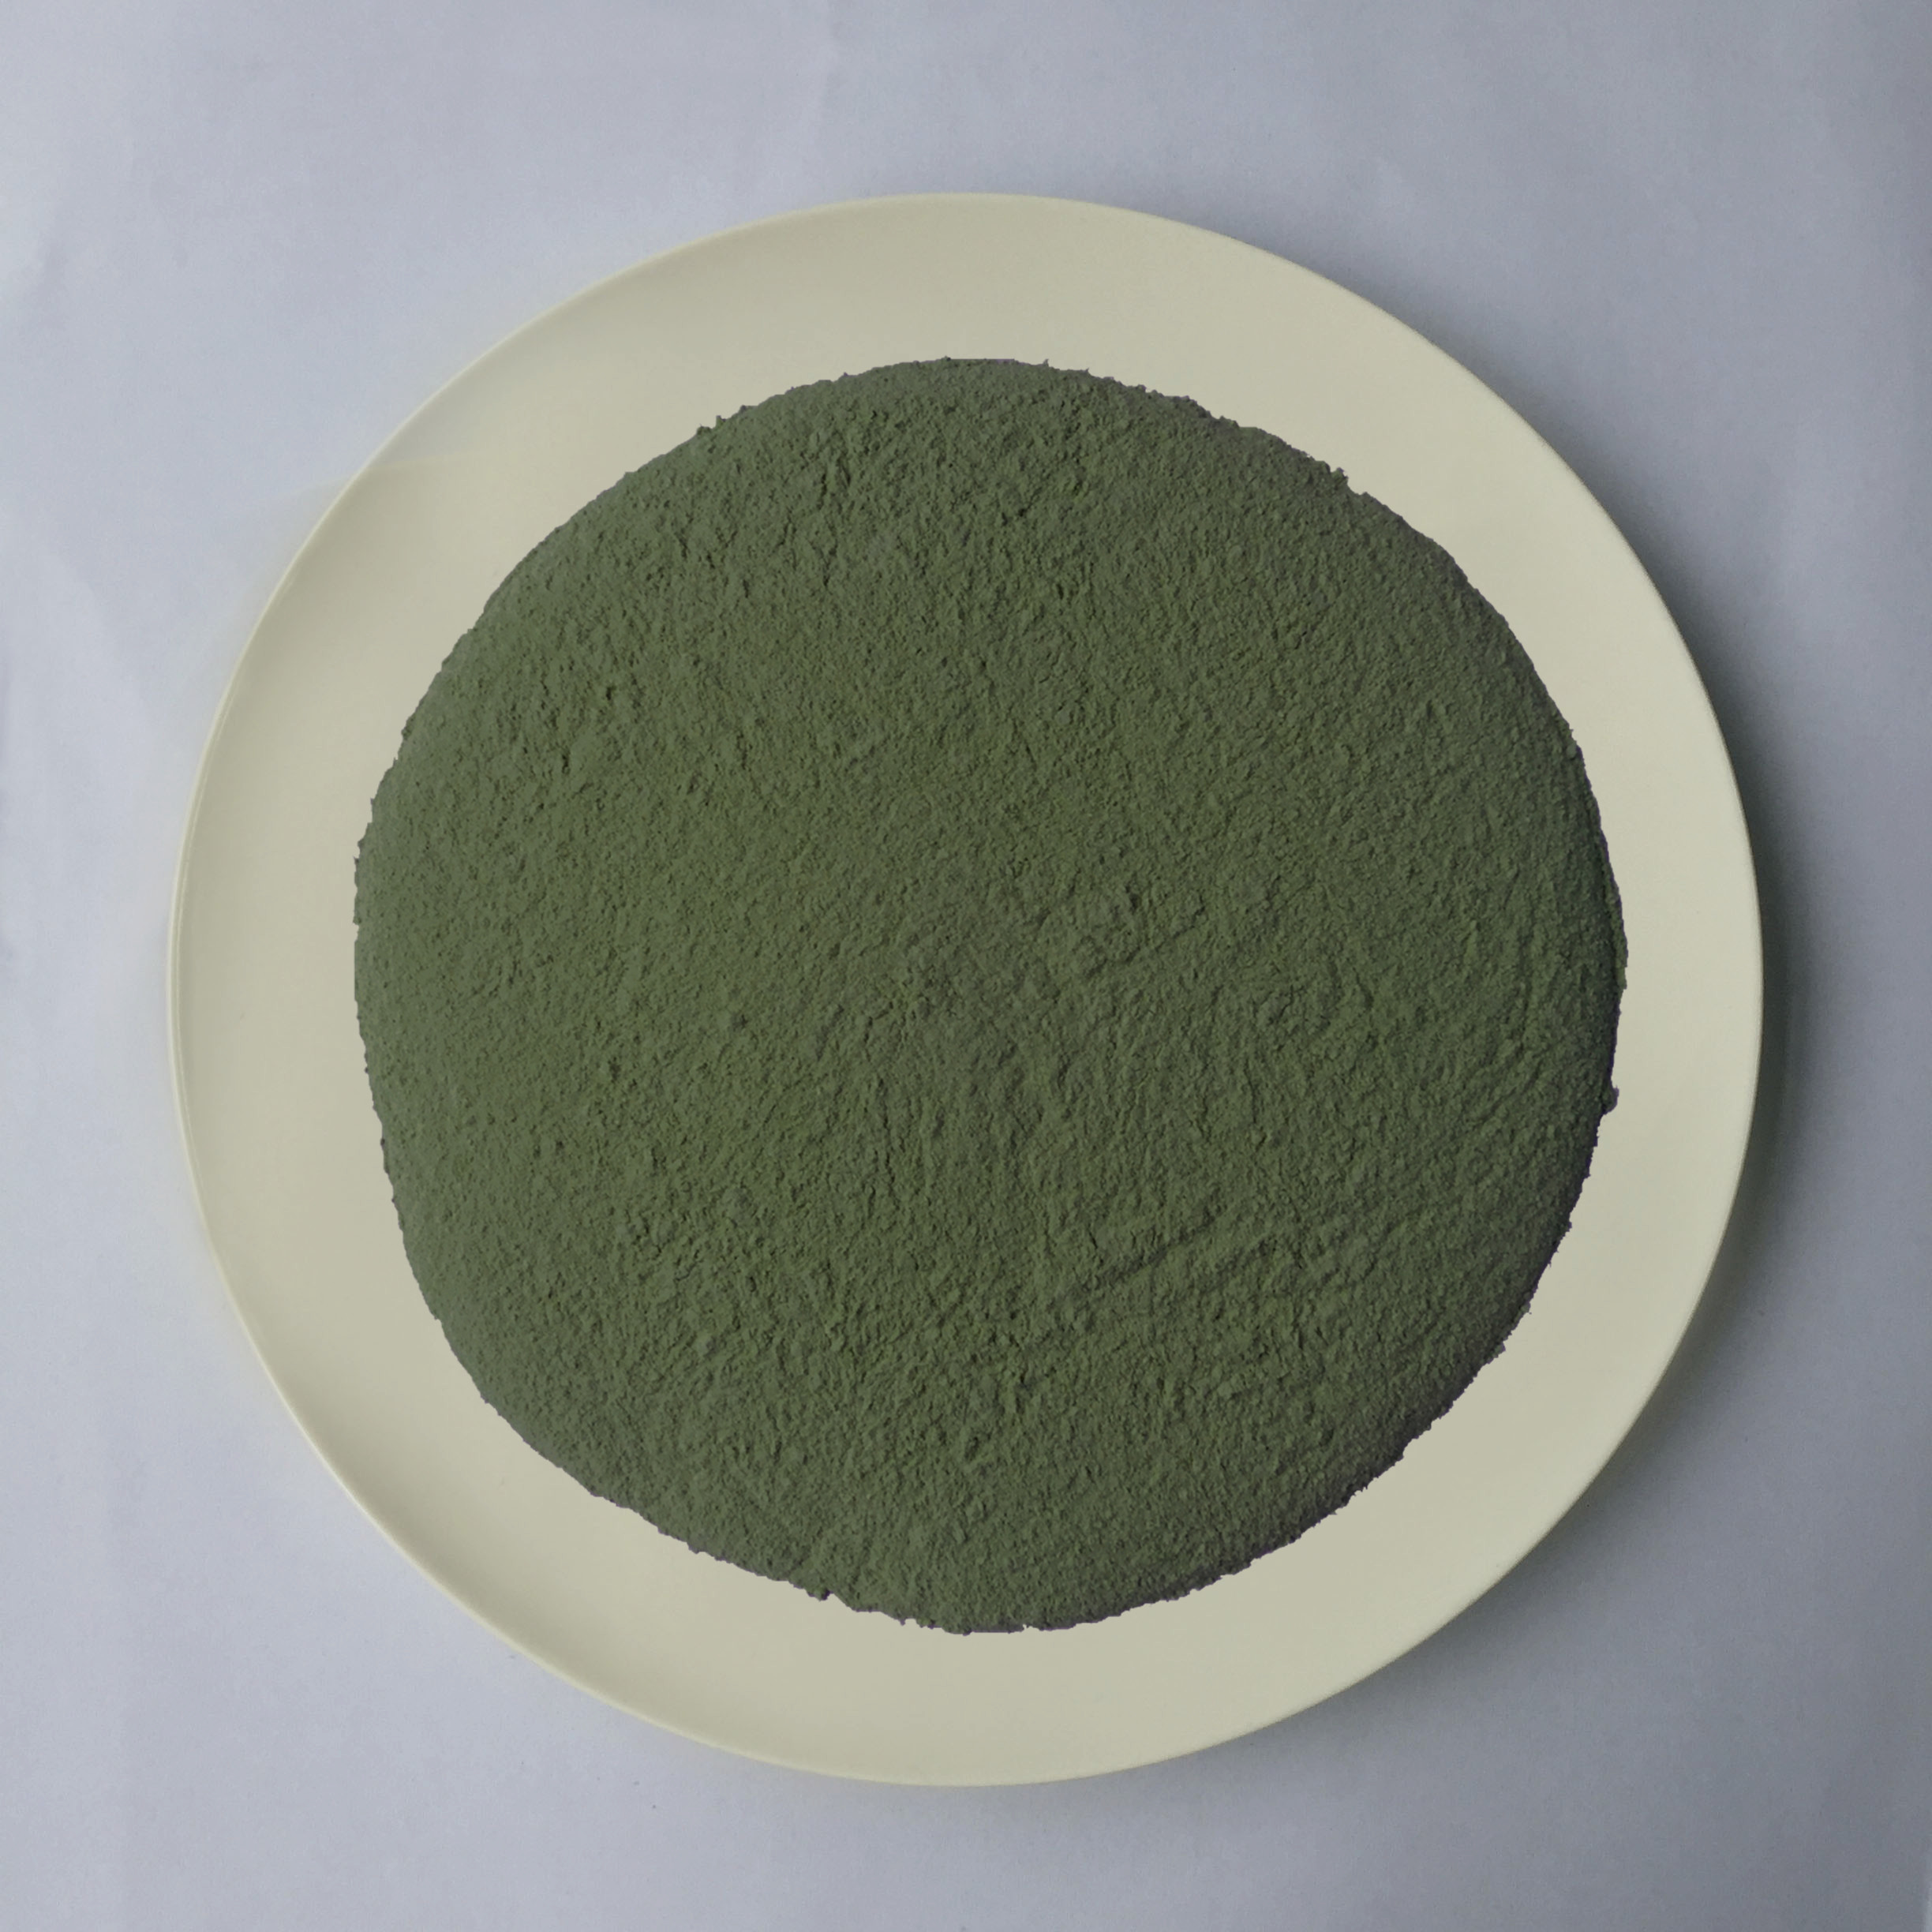 Nguyên liệu nhựa màu xanh lục đậm Chất lượng khuôn mẫu Melamine Chất lượng ổn định